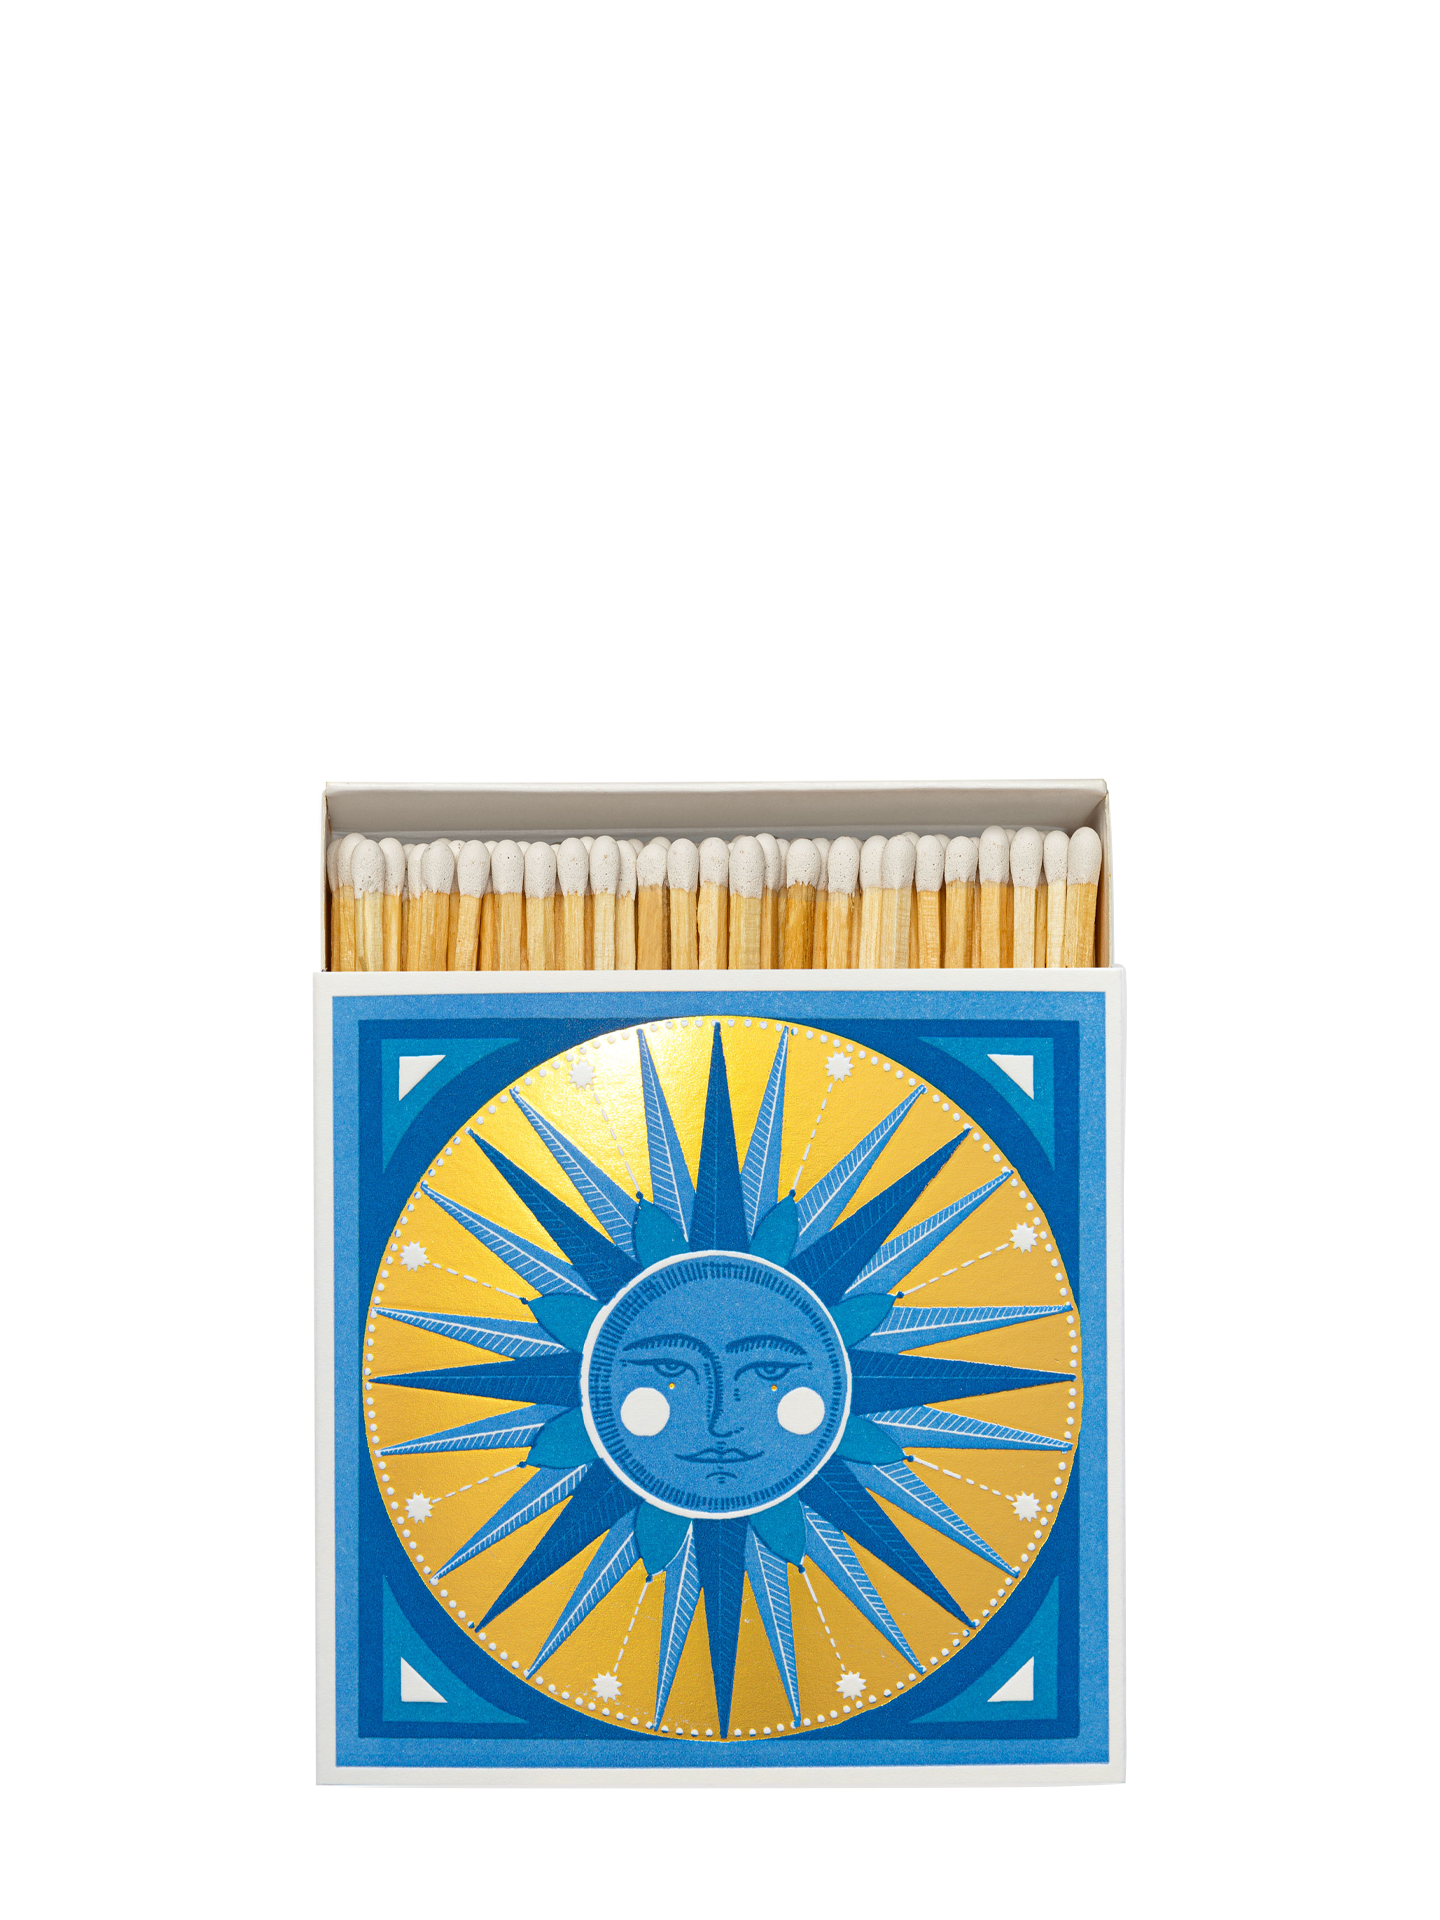 Golden Sun matchbox